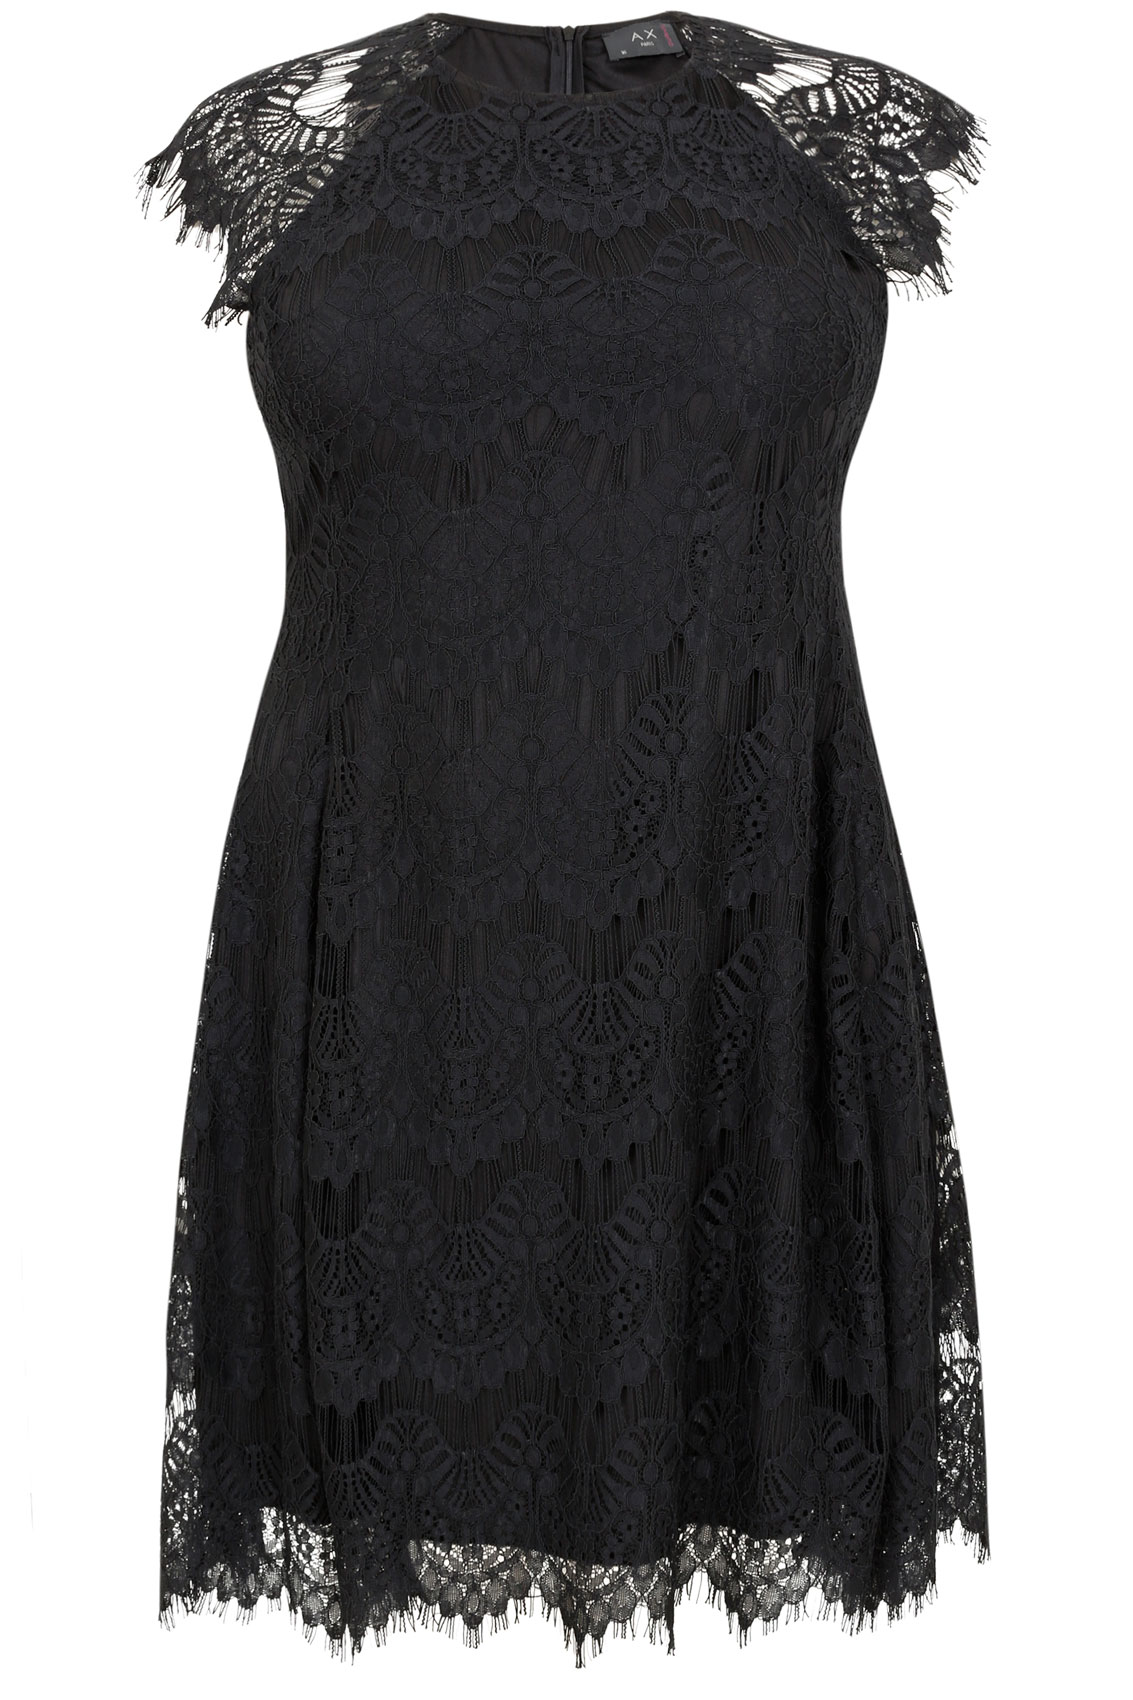 AX PARIS CURVE Black Eyelash Lace Dress, Plus size 18,20,22,24,26,28